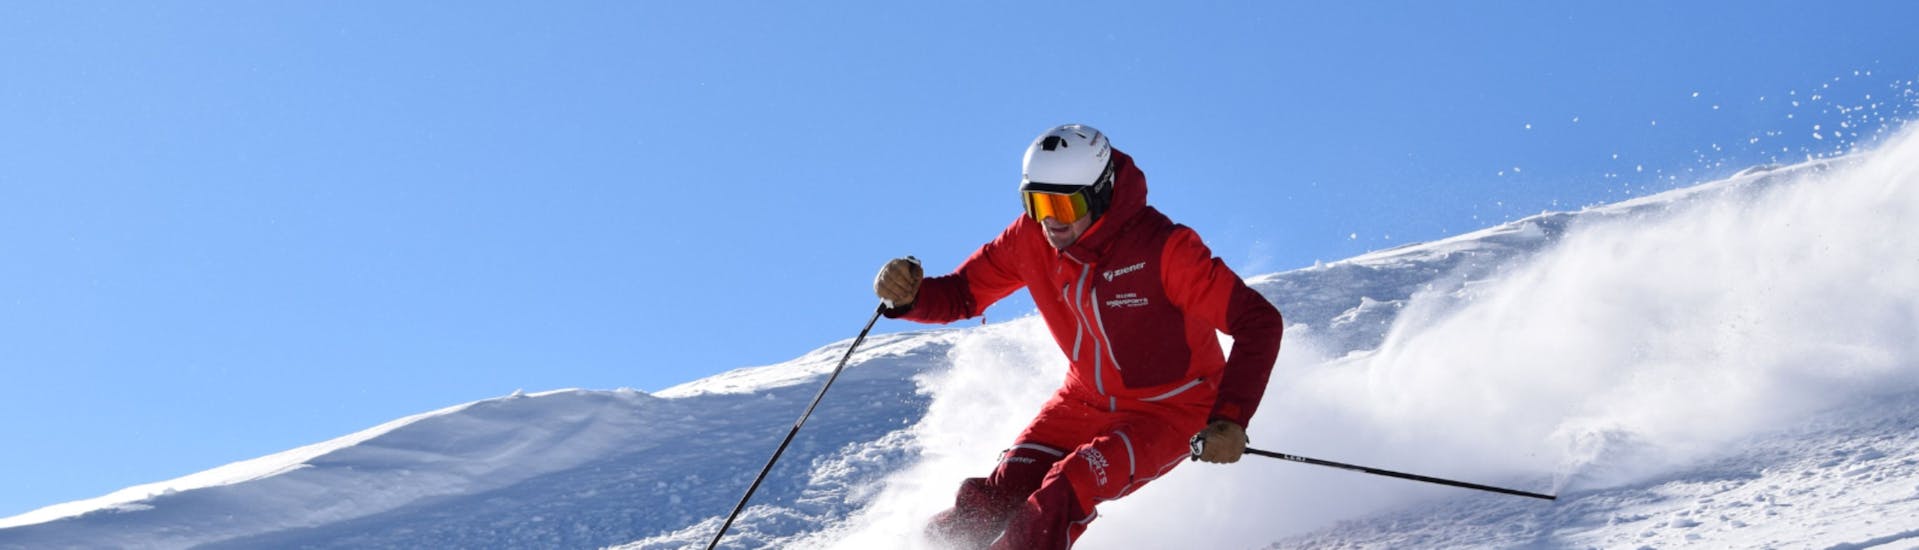 Clases de esquí para adultos a partir de 15 años con experiencia.